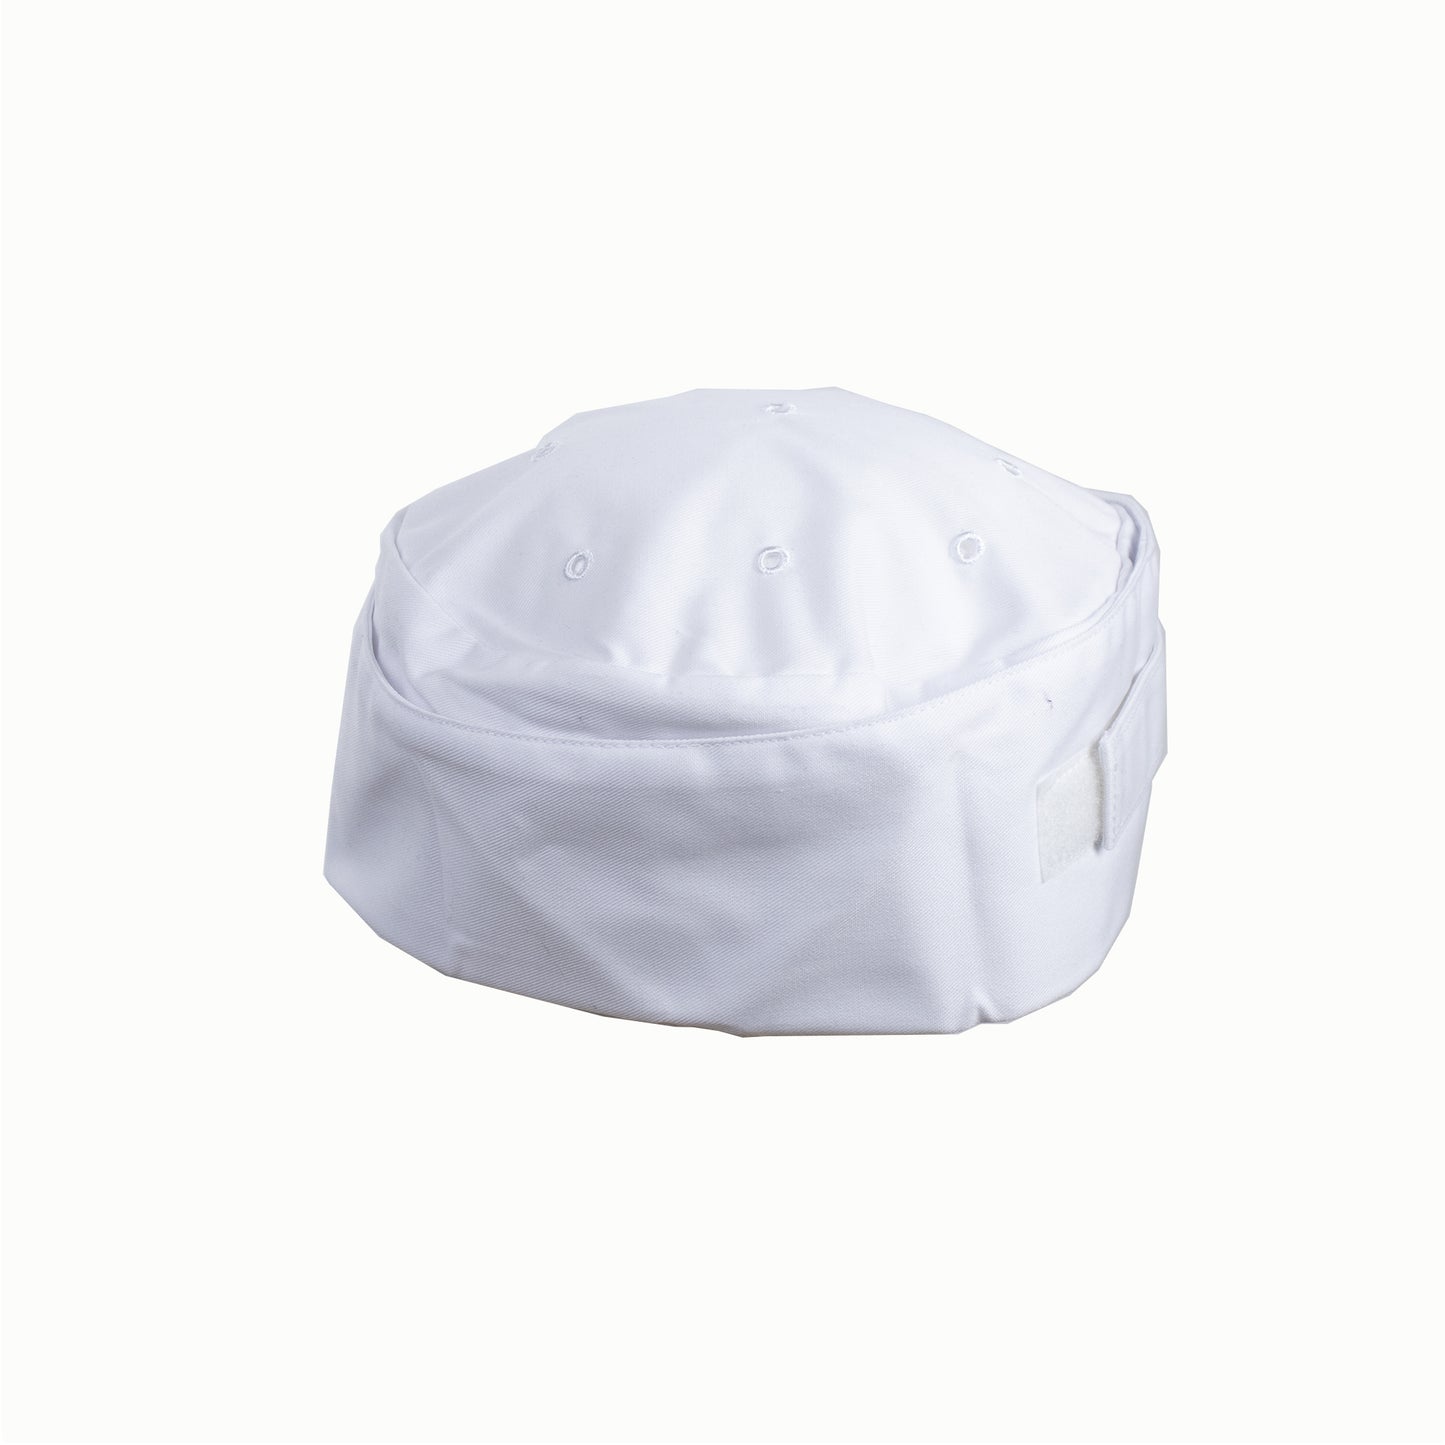 Chapeau type calot ajustable blanc pour cuisinier et pâtissier